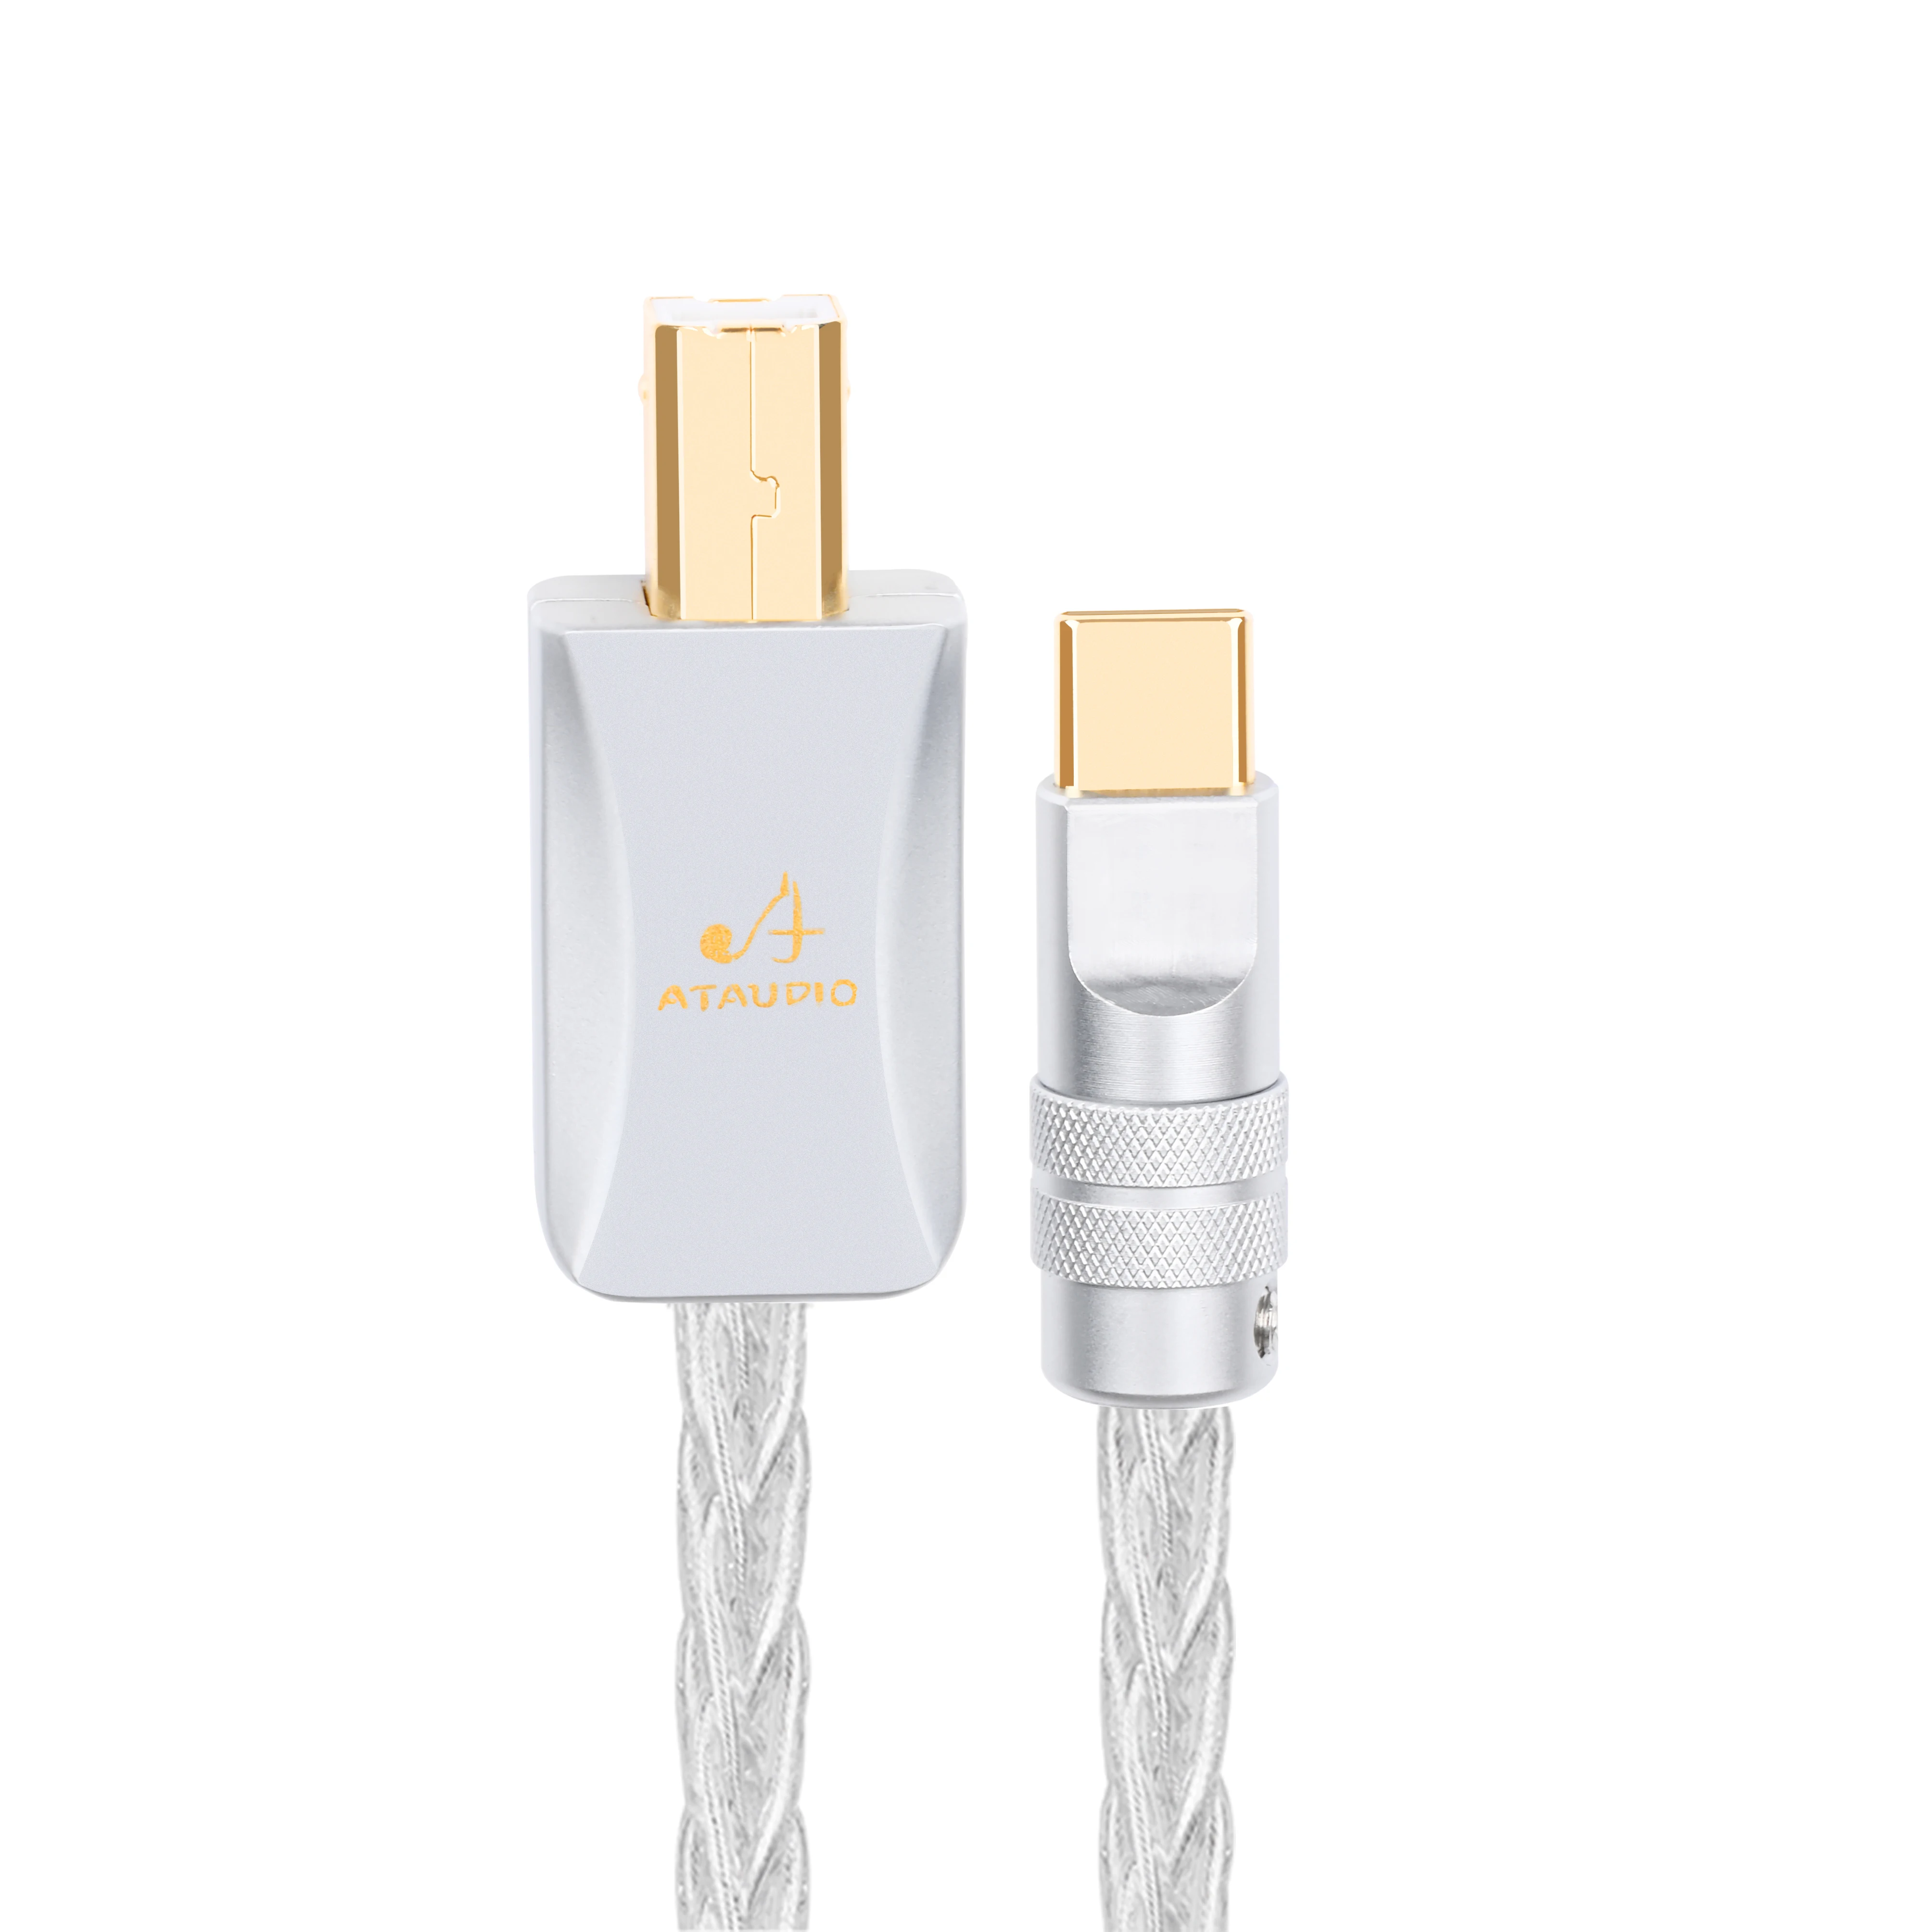 Hifi čistý stříbro USB kabel vysoký představení typ C na typ pokud by otg datový audio kabel pro mobilephone a DAC